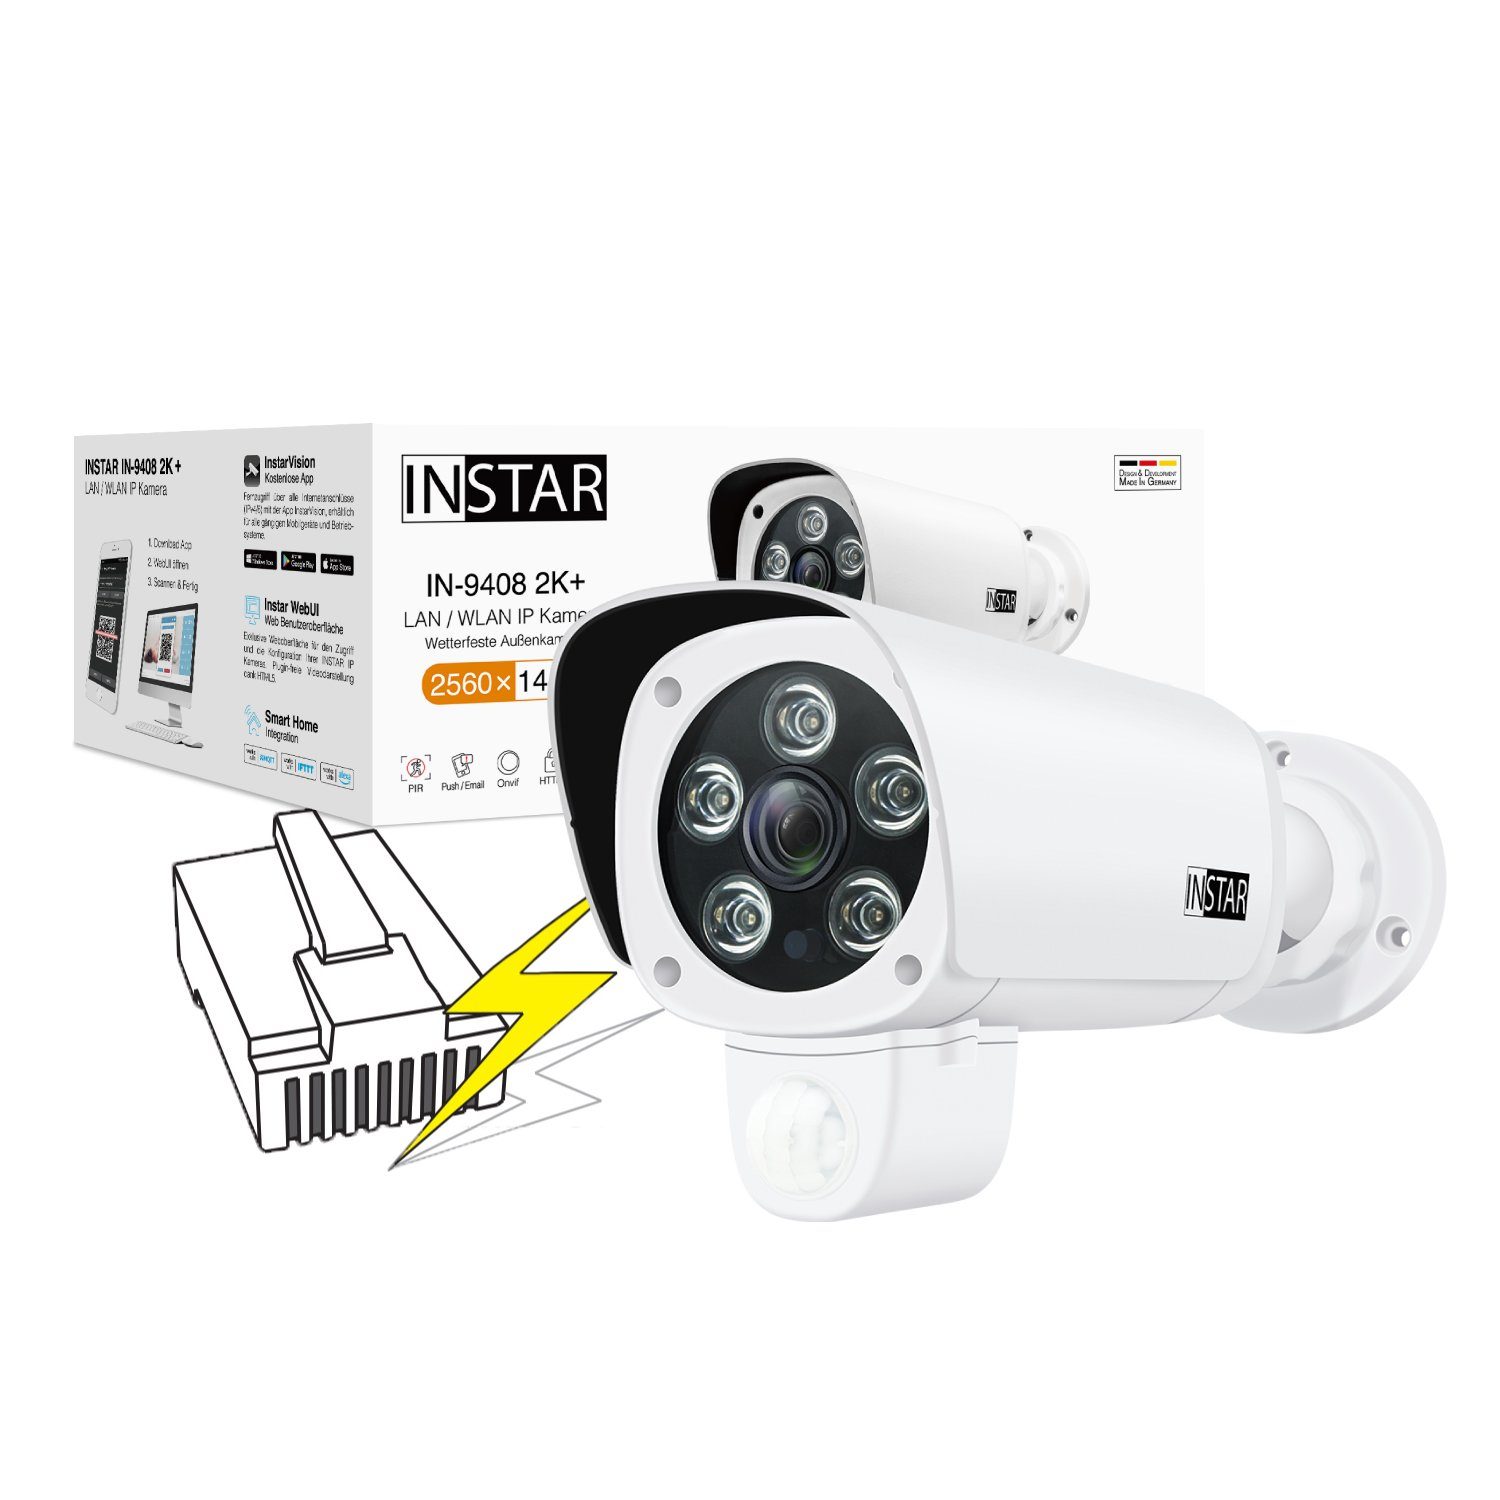 INSTAR IP Kamera IN-9408 2K+ (LAN / PoE Version) mit AI Überwachungskamera